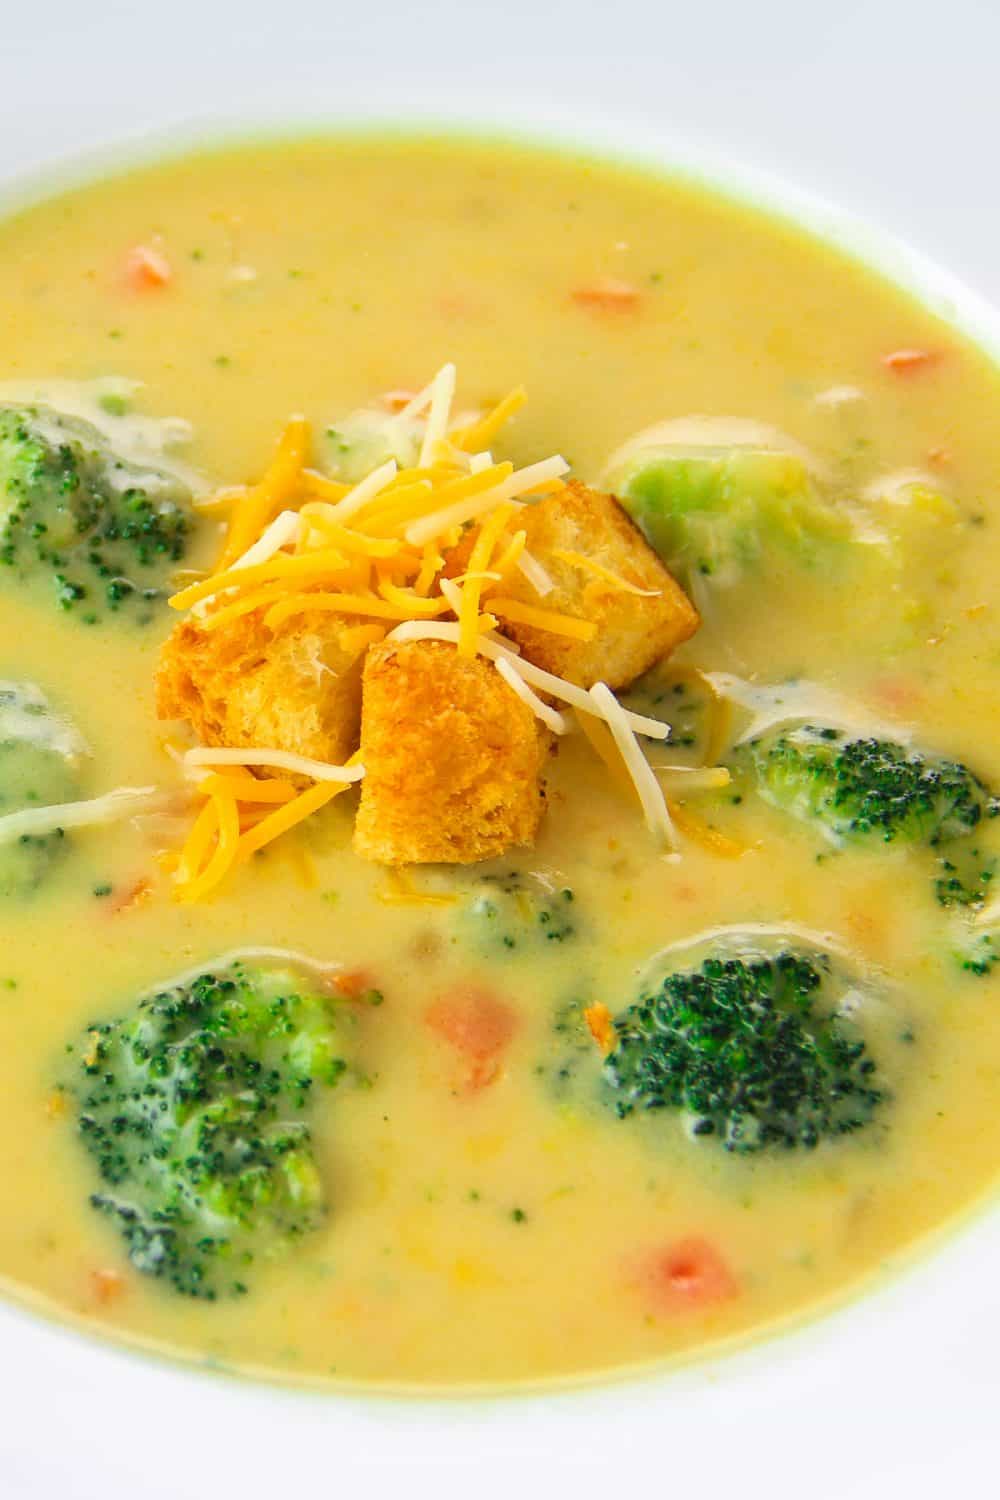 Copycat Panera Bread Broccoli Cheddar Soup Recipe